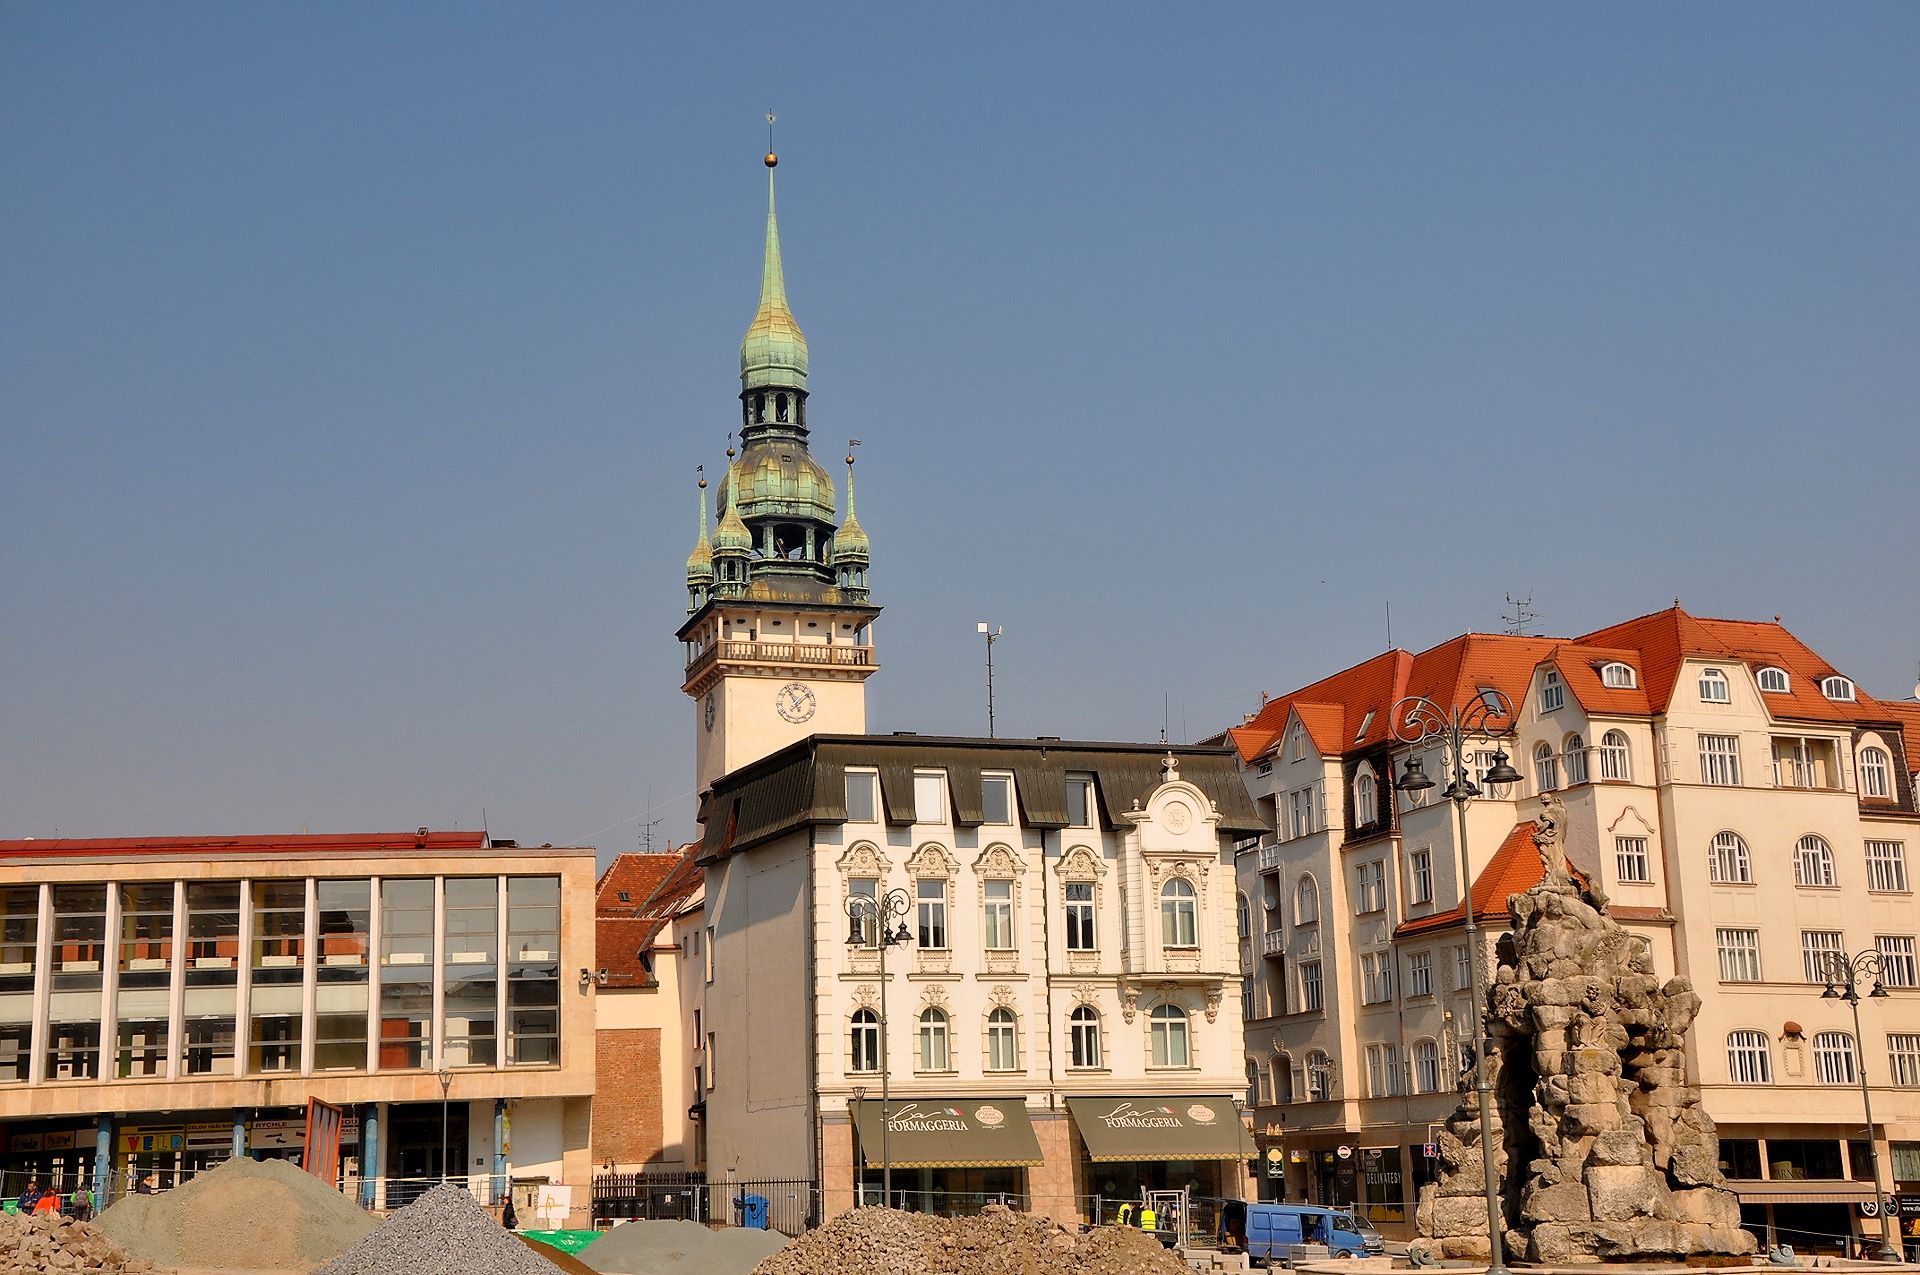 Krautmarkt mit Barockbrunnen, dahinter der Turm des Alten Rathauses